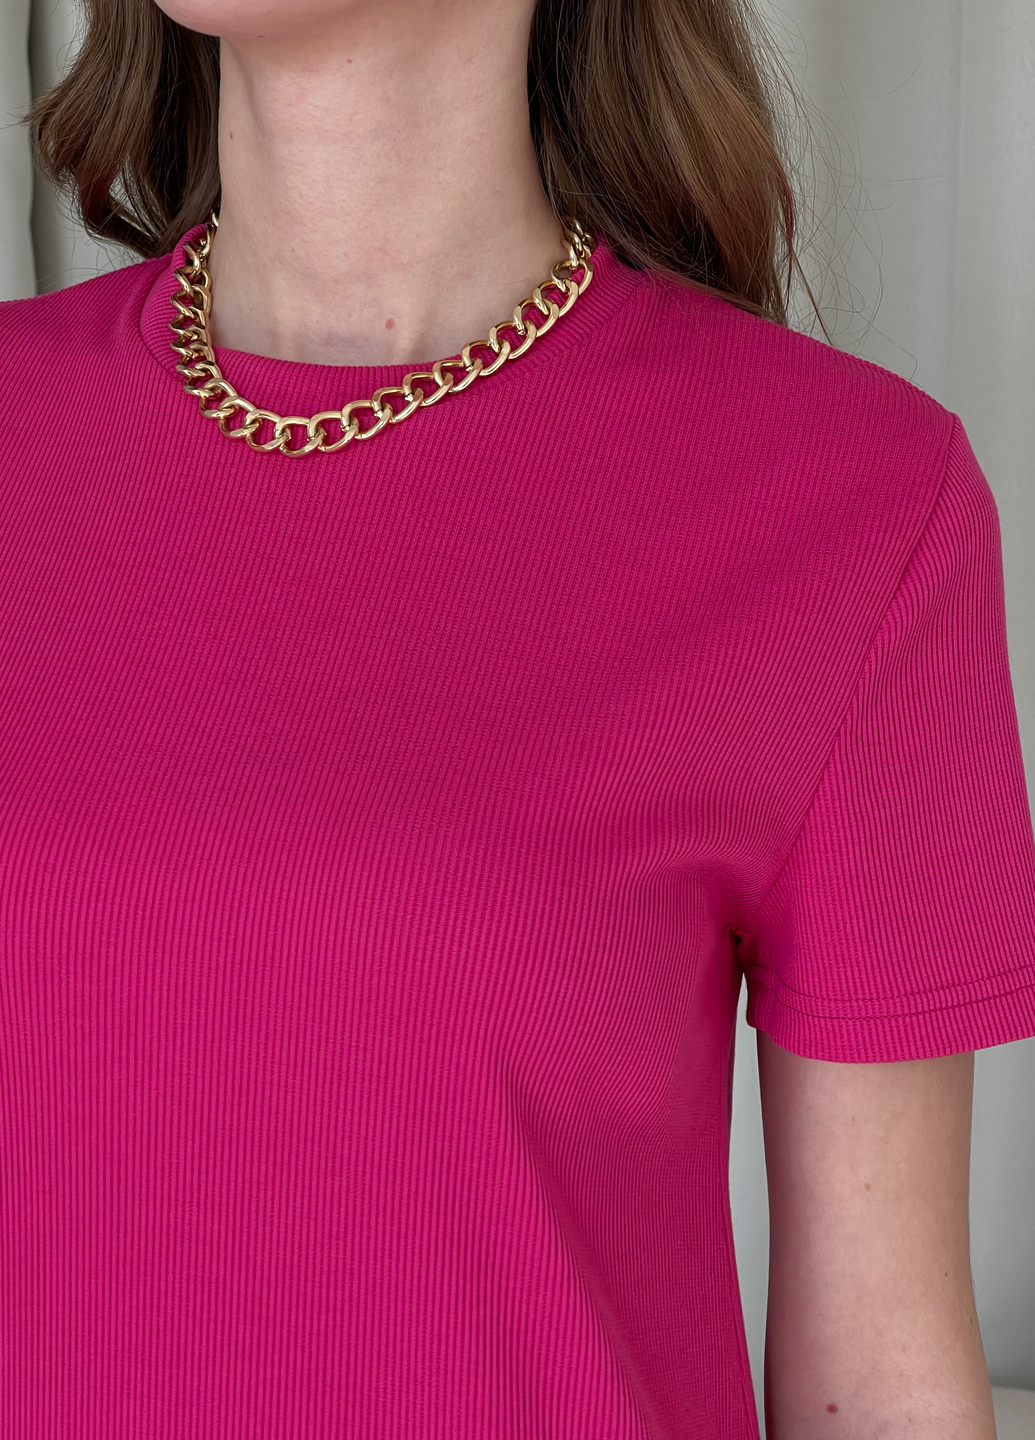 Купить Длинное платье-футболка в рубчик розовое Merlini Кассо 700000128 размер 42-44 (S-M) в интернет-магазине